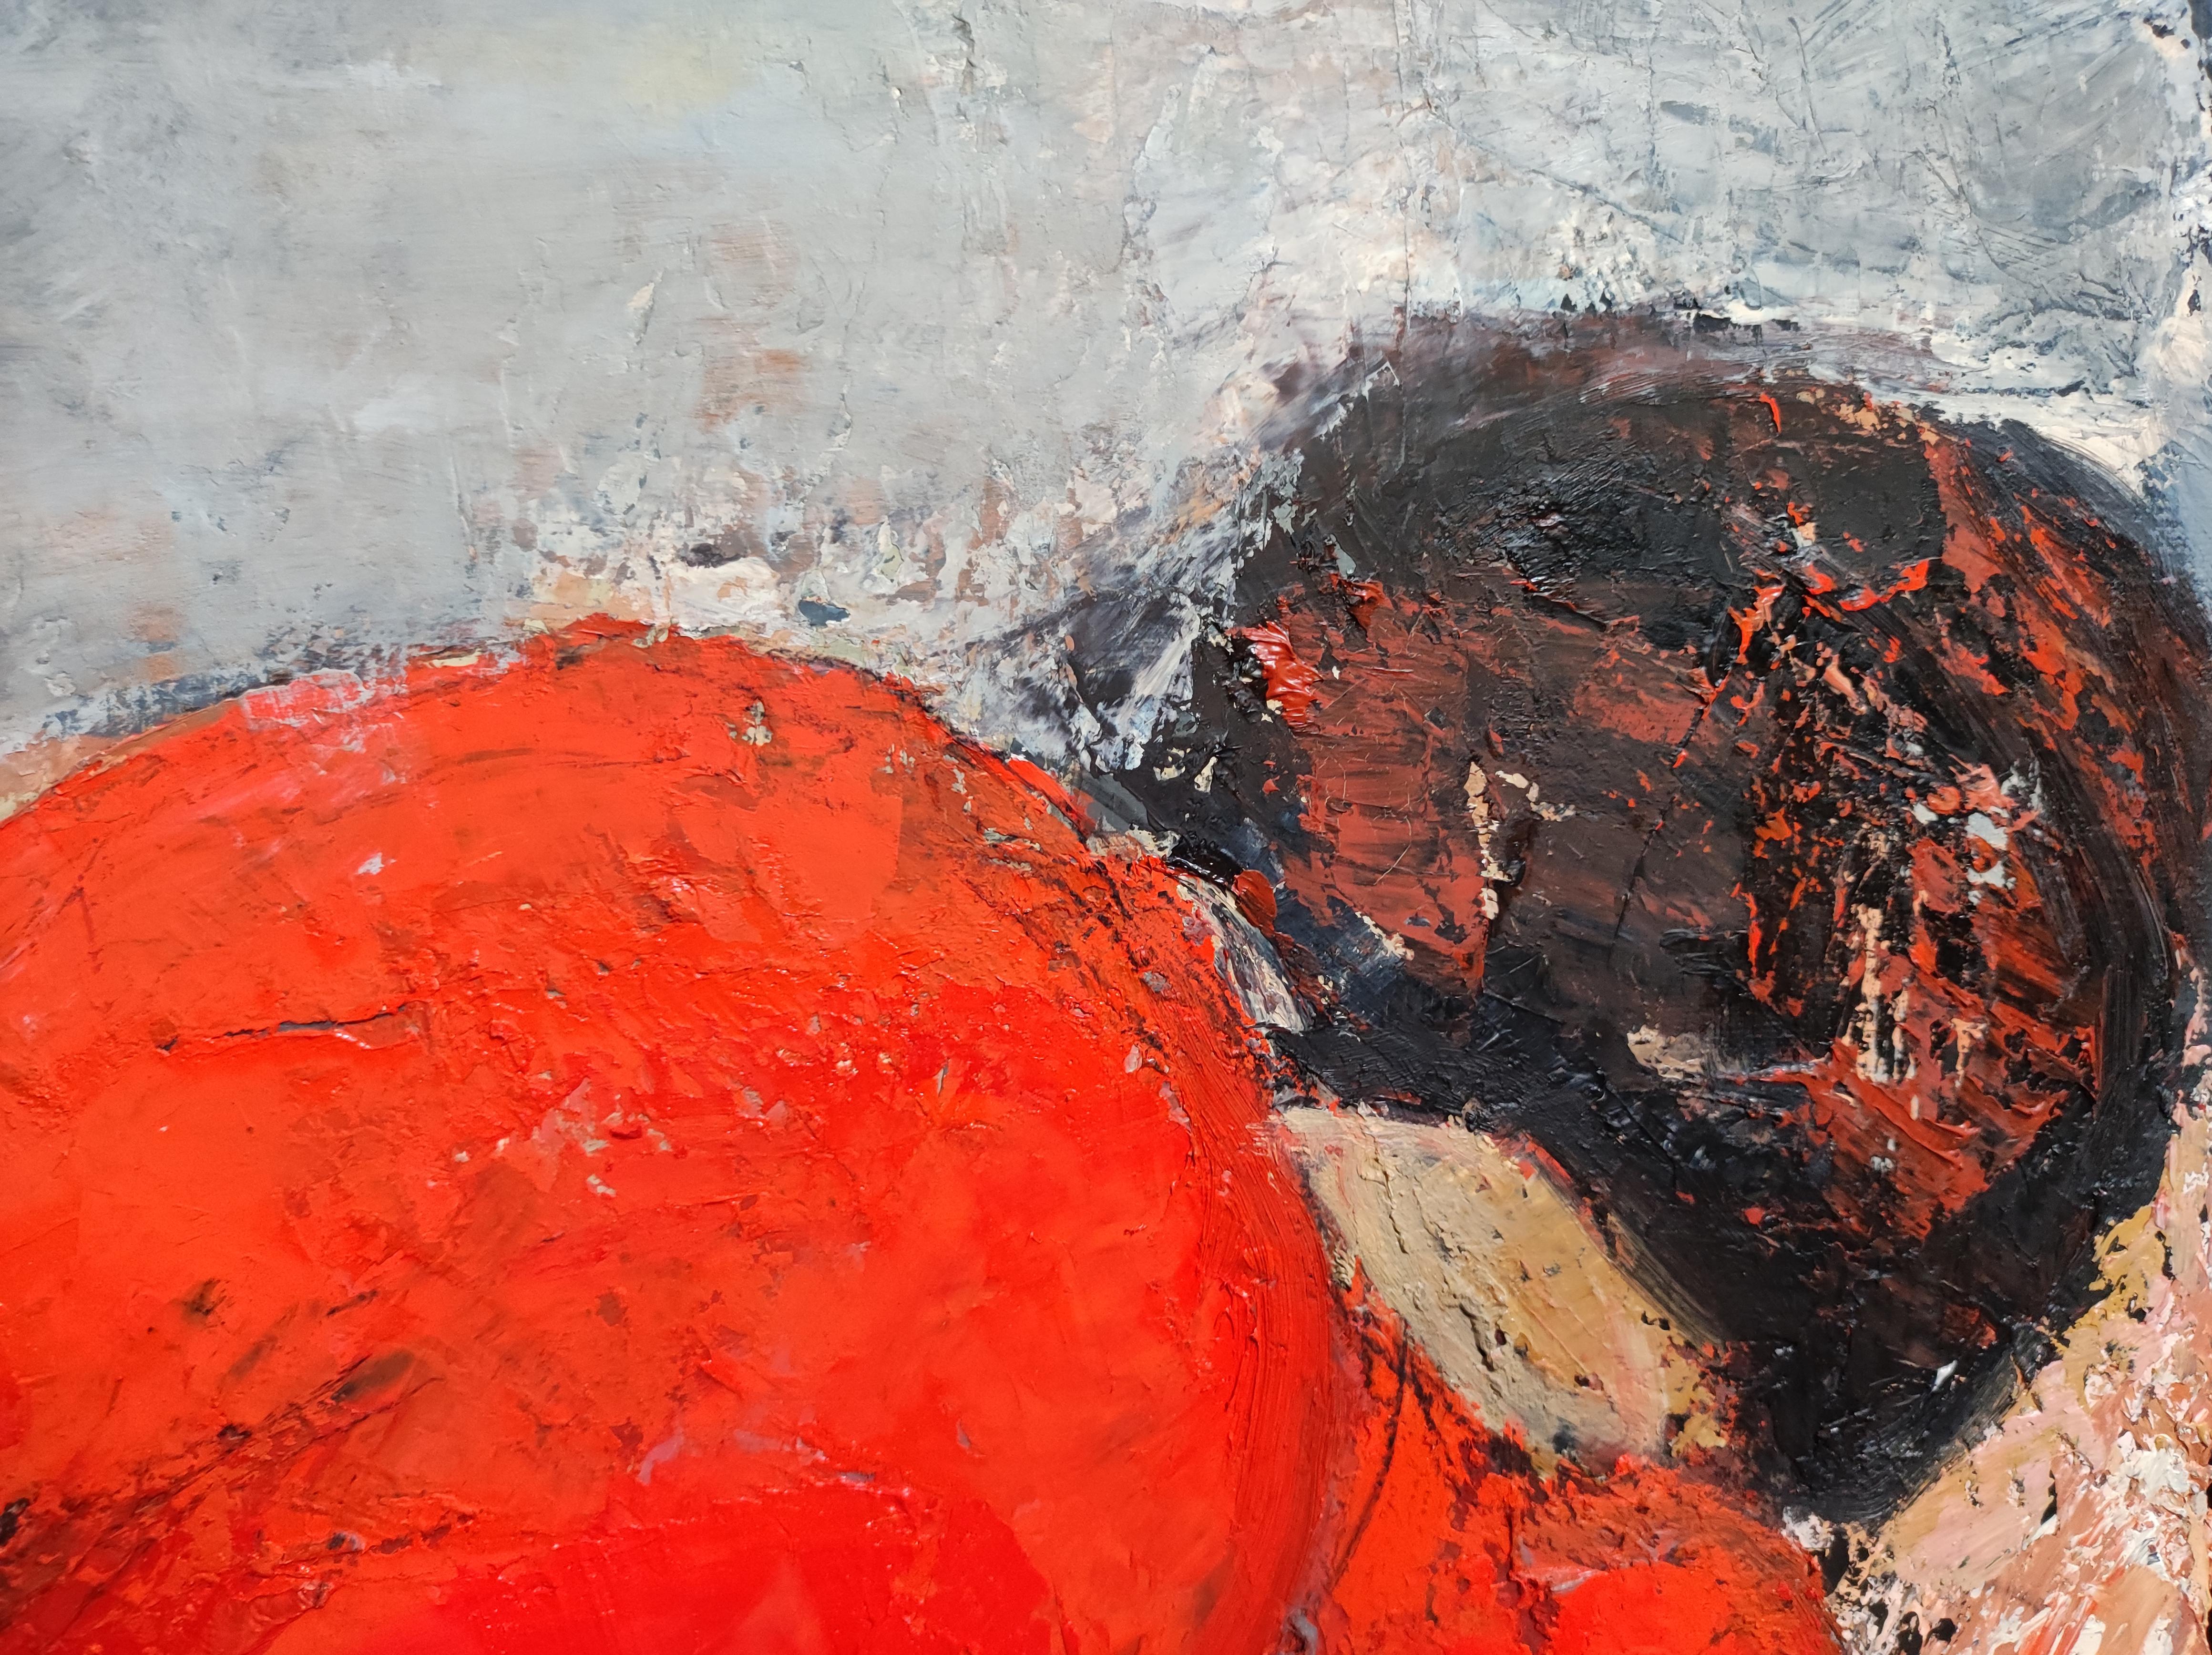 Das Ölgemälde von Sophie Dumont fesselt den Betrachter mit der kühnen Darstellung einer liegenden Frau, die von hinten gesehen in ein hypnotisierendes rotes Kleid gehüllt ist. Der charakteristische Stil des Künstlers, der sich durch runde und